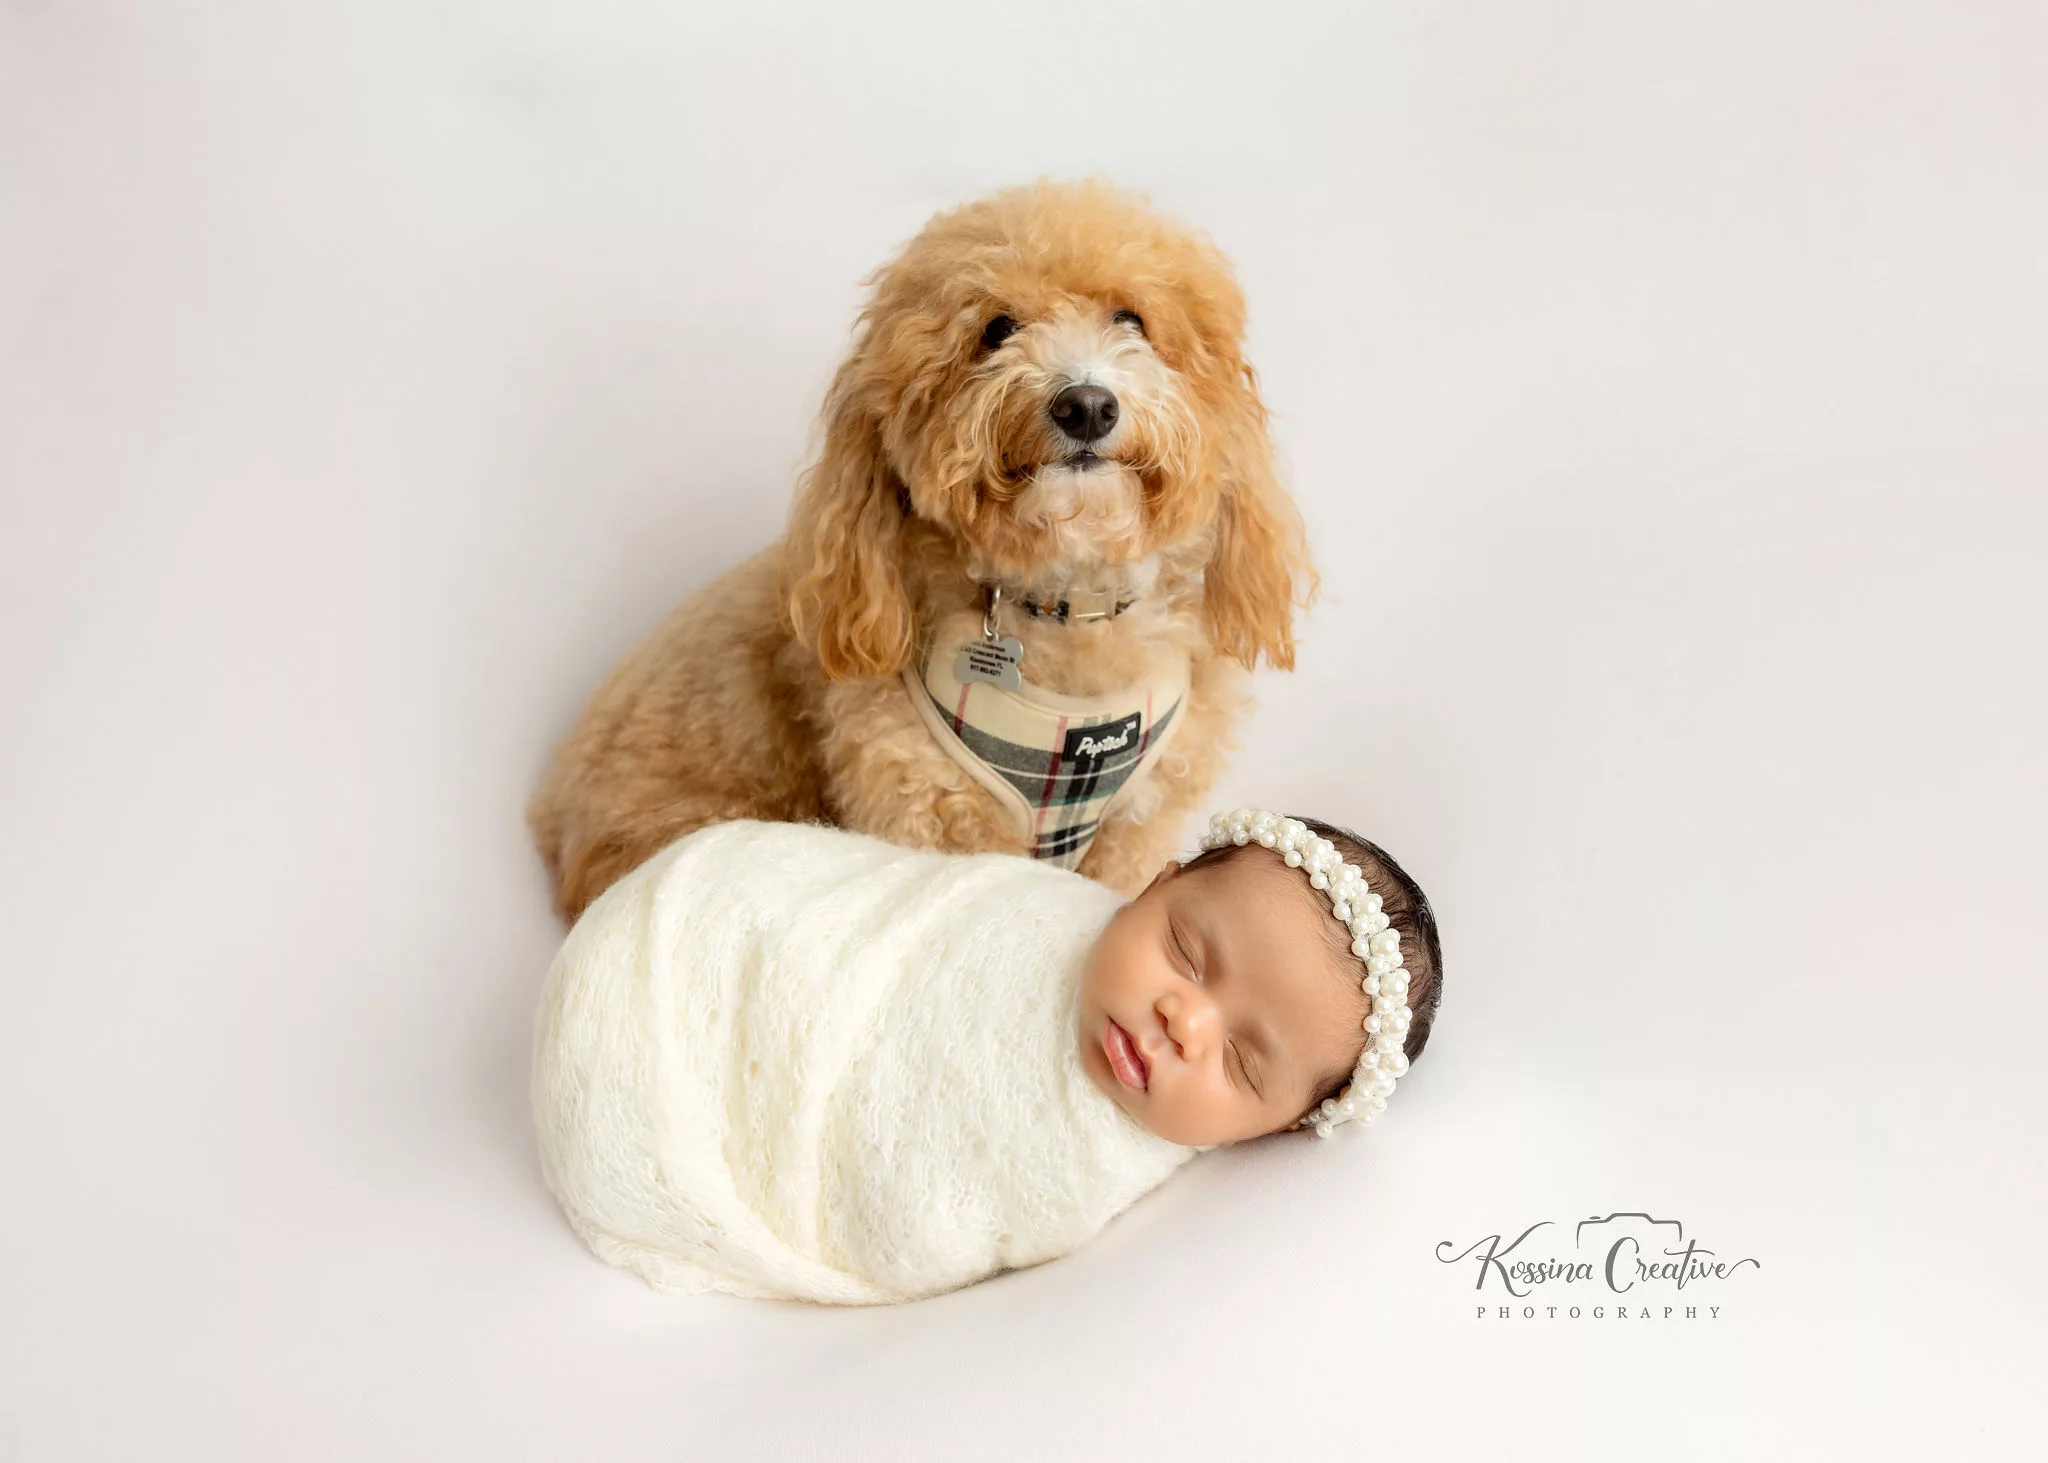 Orlando Newborn Photographer Baby Girl Photo studio white on white baby with puppy dog